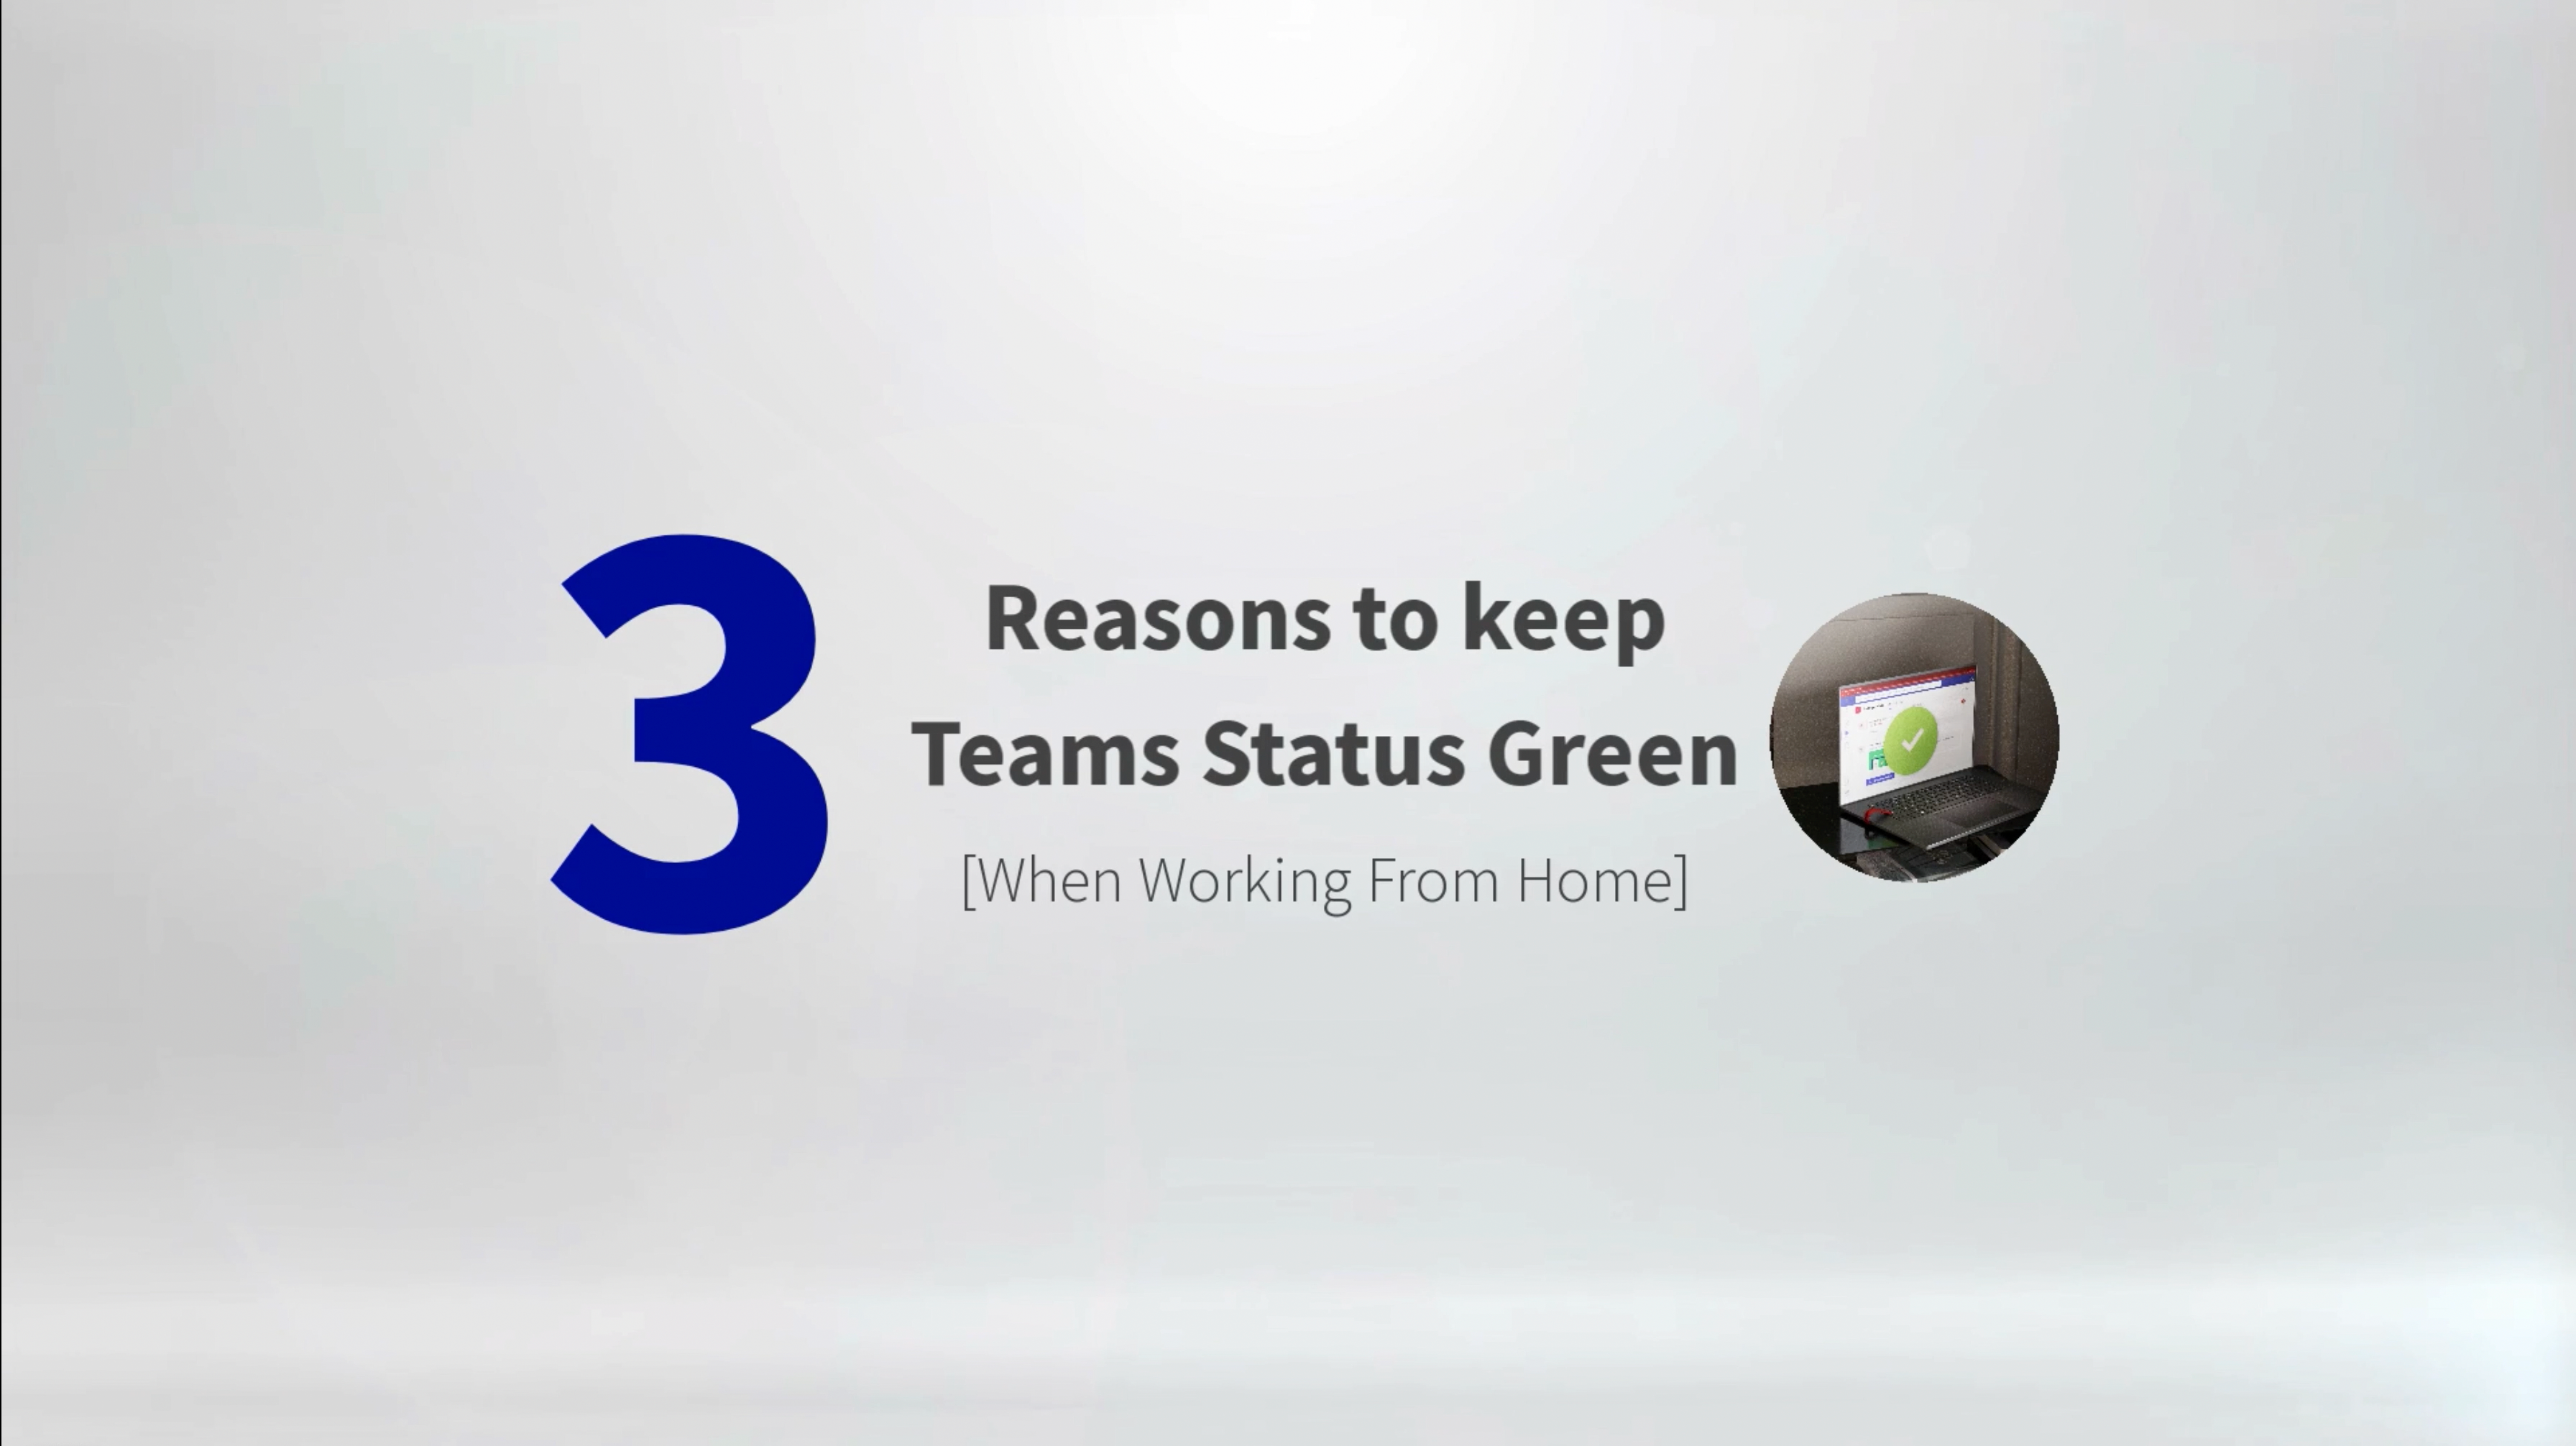 Video laden: Drei Gründe, den Teamstatus grün zu halten. 1. Datenschutz 2. Produktivität 3. Freiheit.